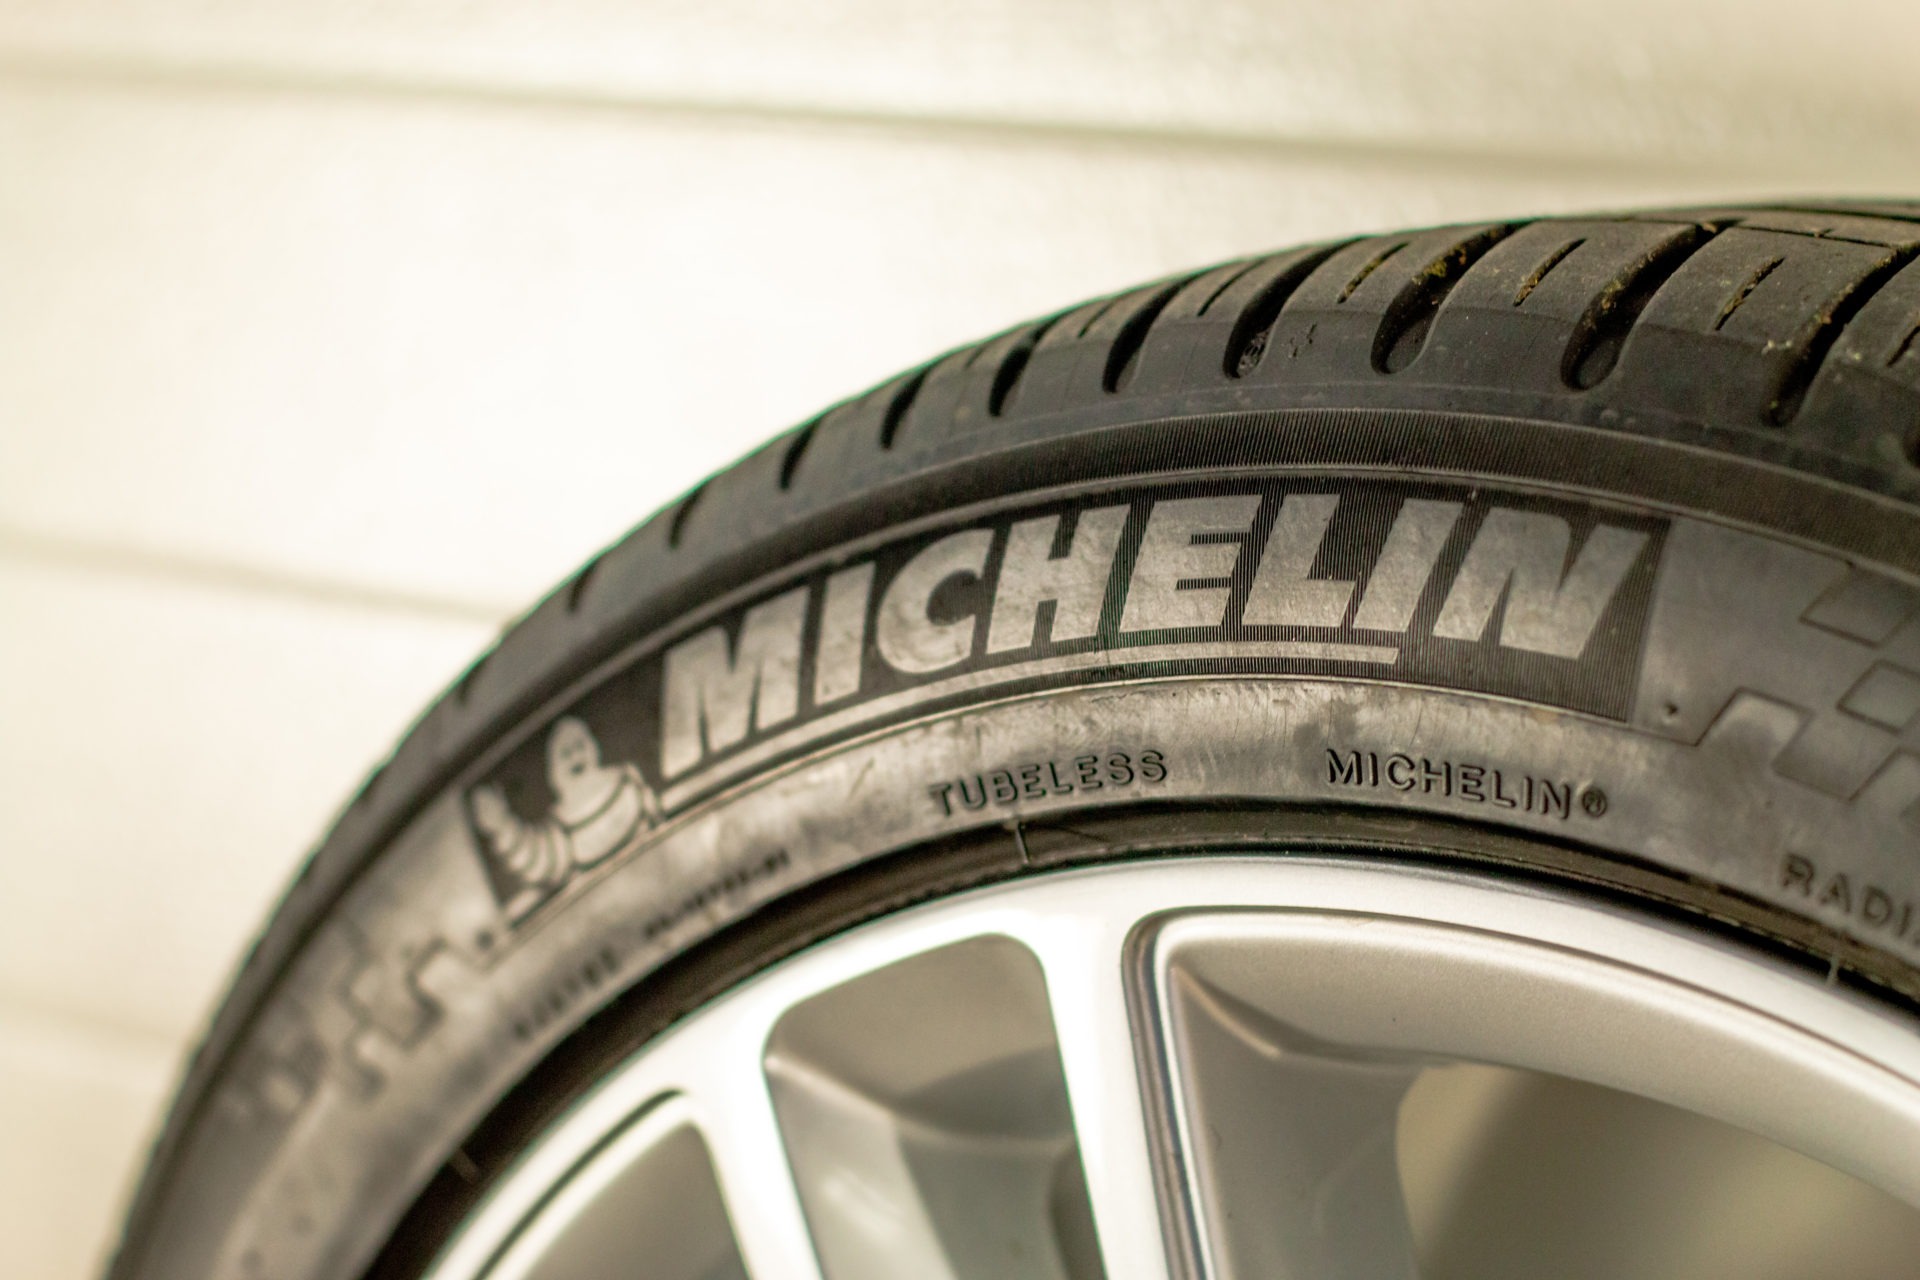 Original 19 Zoll Felgen Standard Michelin DOT Felge Reifen Sommerreifen Allwetterreifen Rad Räder Felgensatz Radsatz gebraucht RDKS